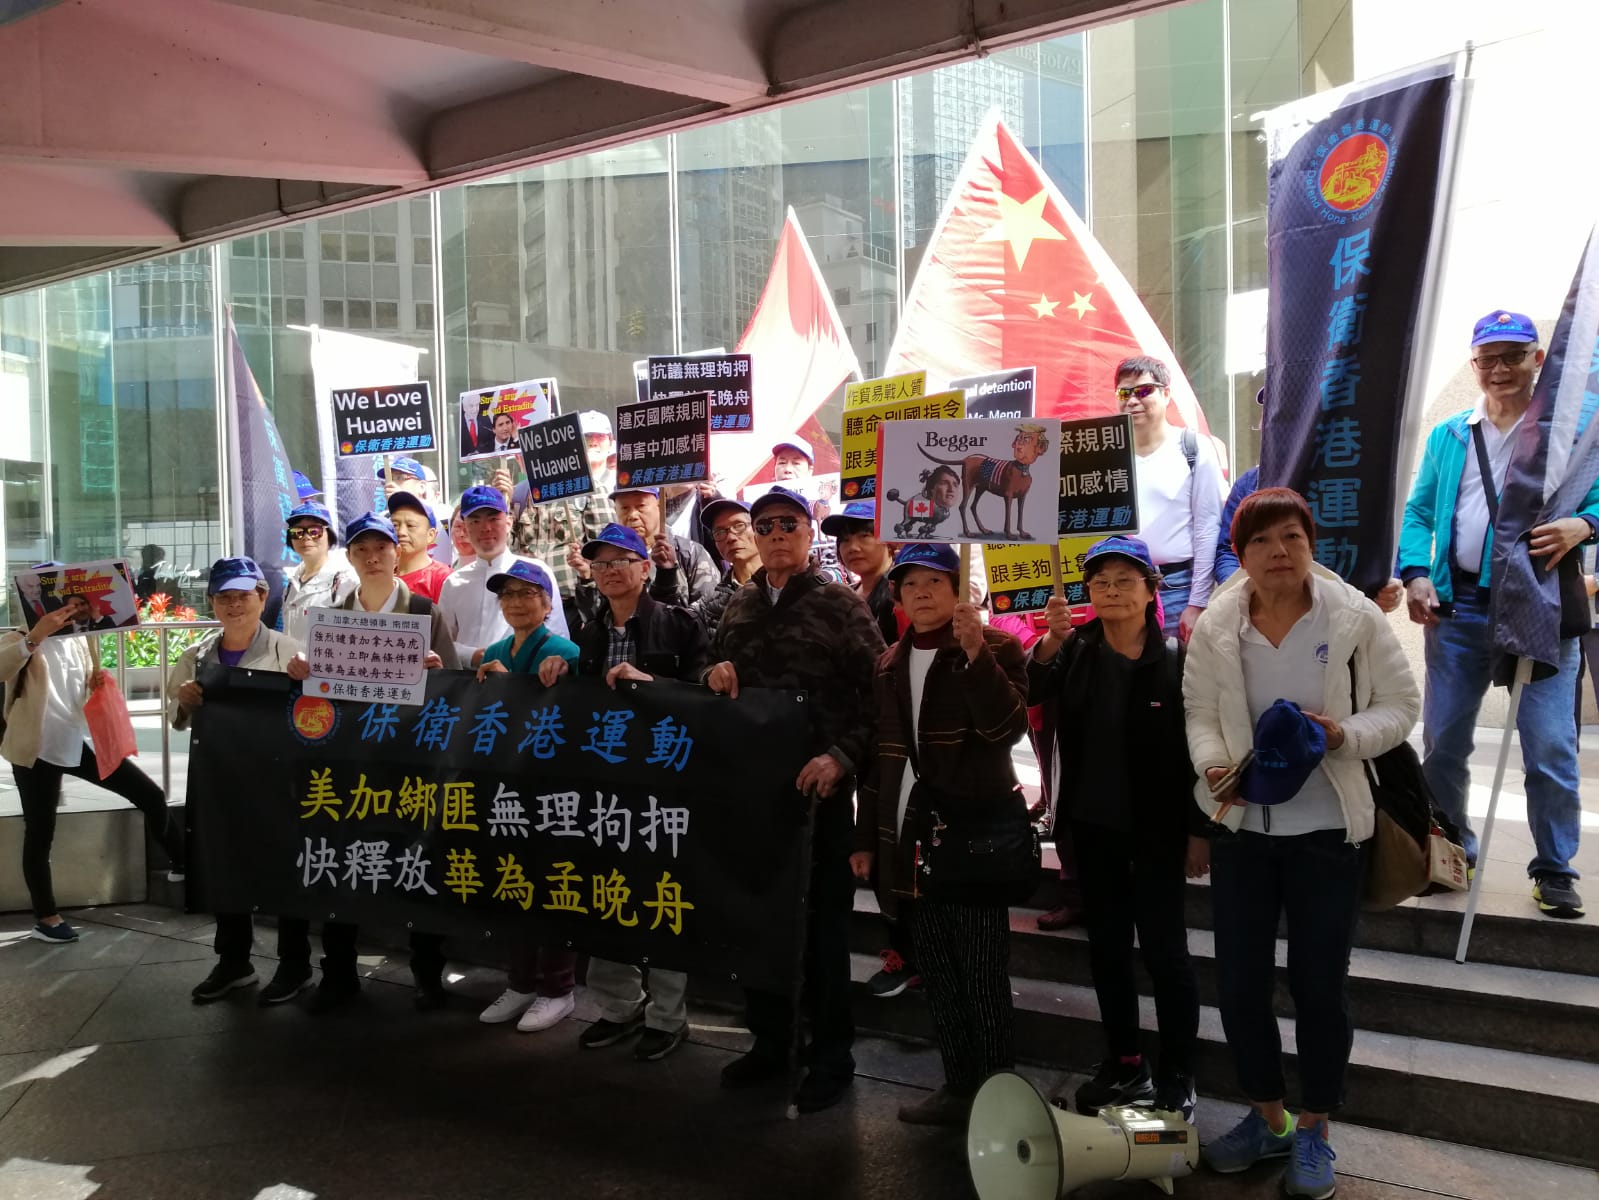 保衛香港運動 主辦「快釋放孟晚舟」遊行集會